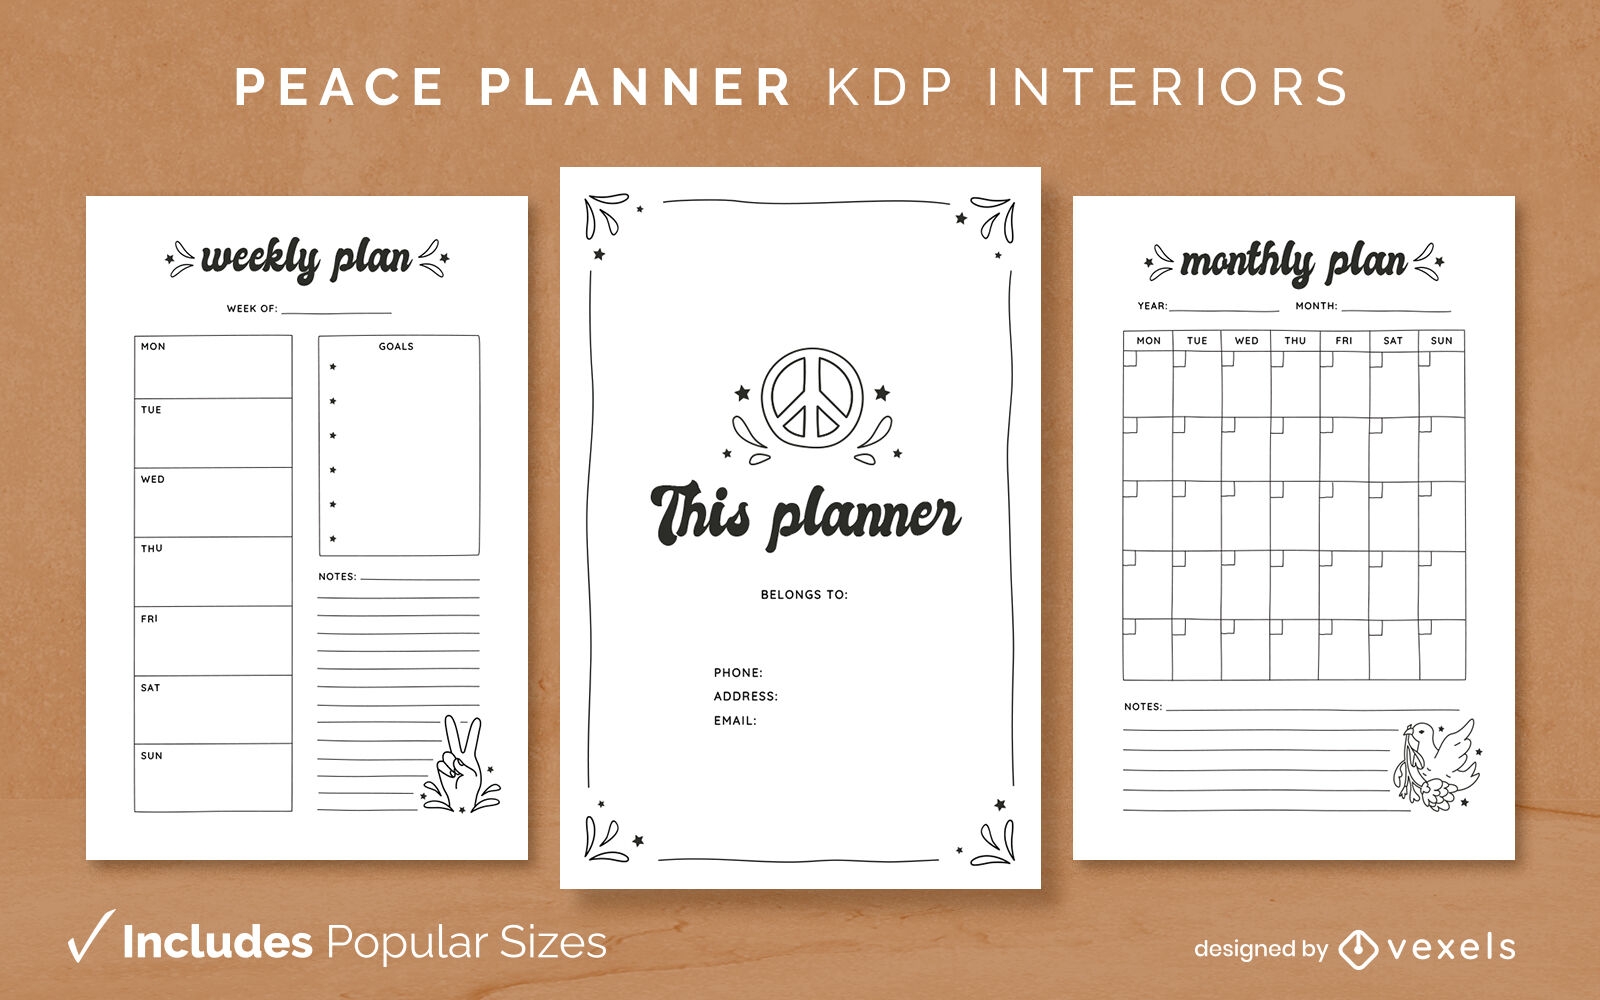 Diseño de diario del planificador de la paz Modelo KDP